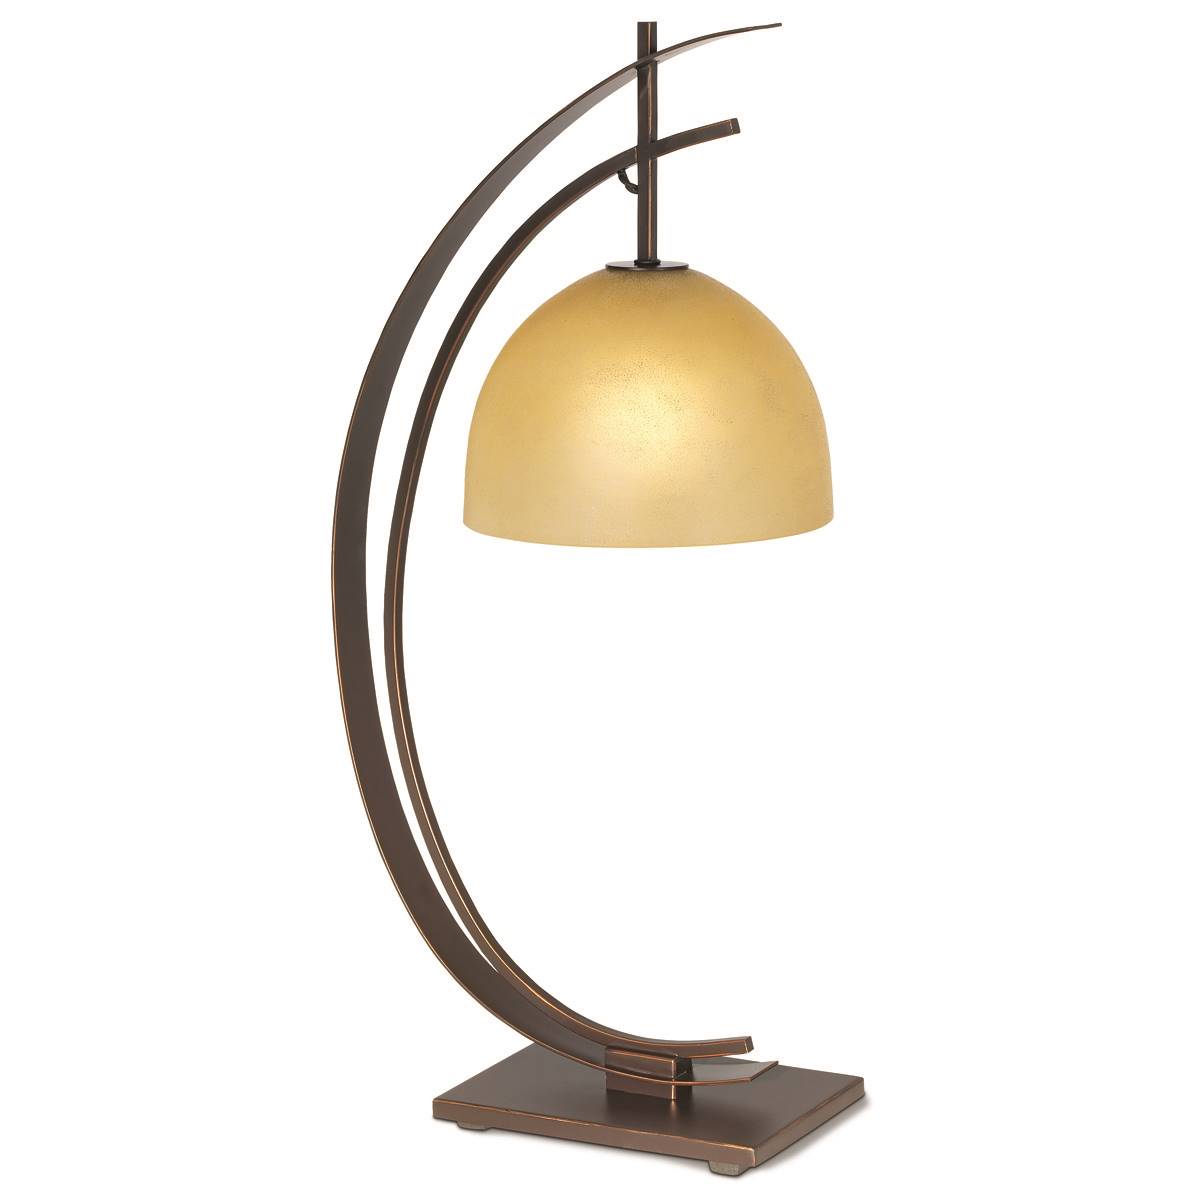 Pacific Coast Lighting Orbit 28in. Bronze Table Lamp